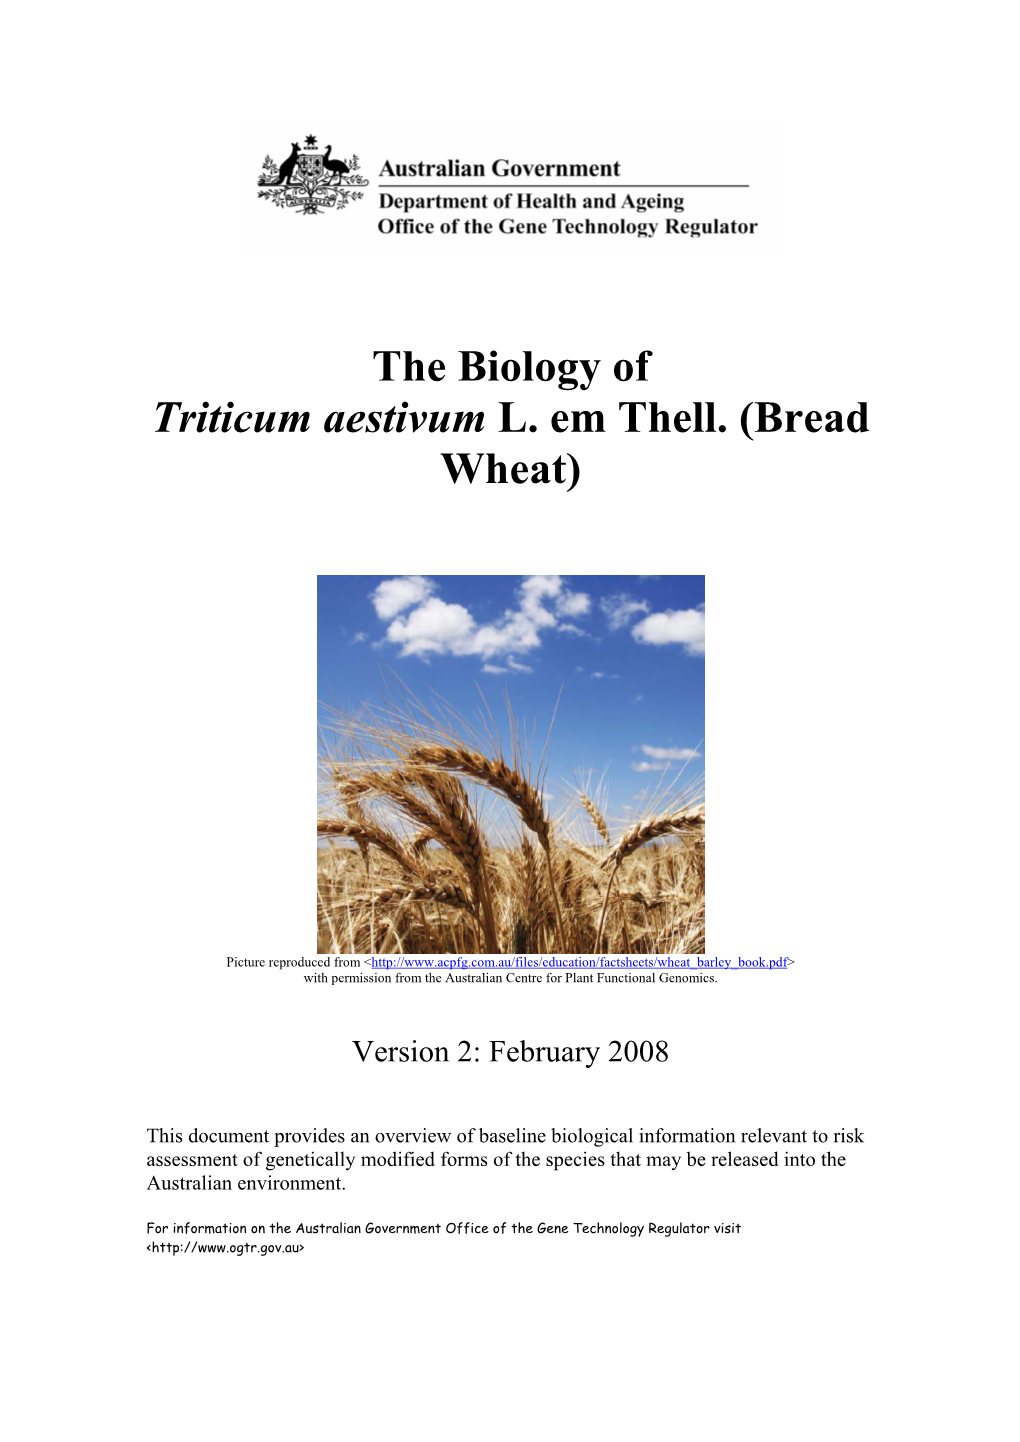 The Biology of Triticum Aestivum L. Em Thell (Bread Wheat)